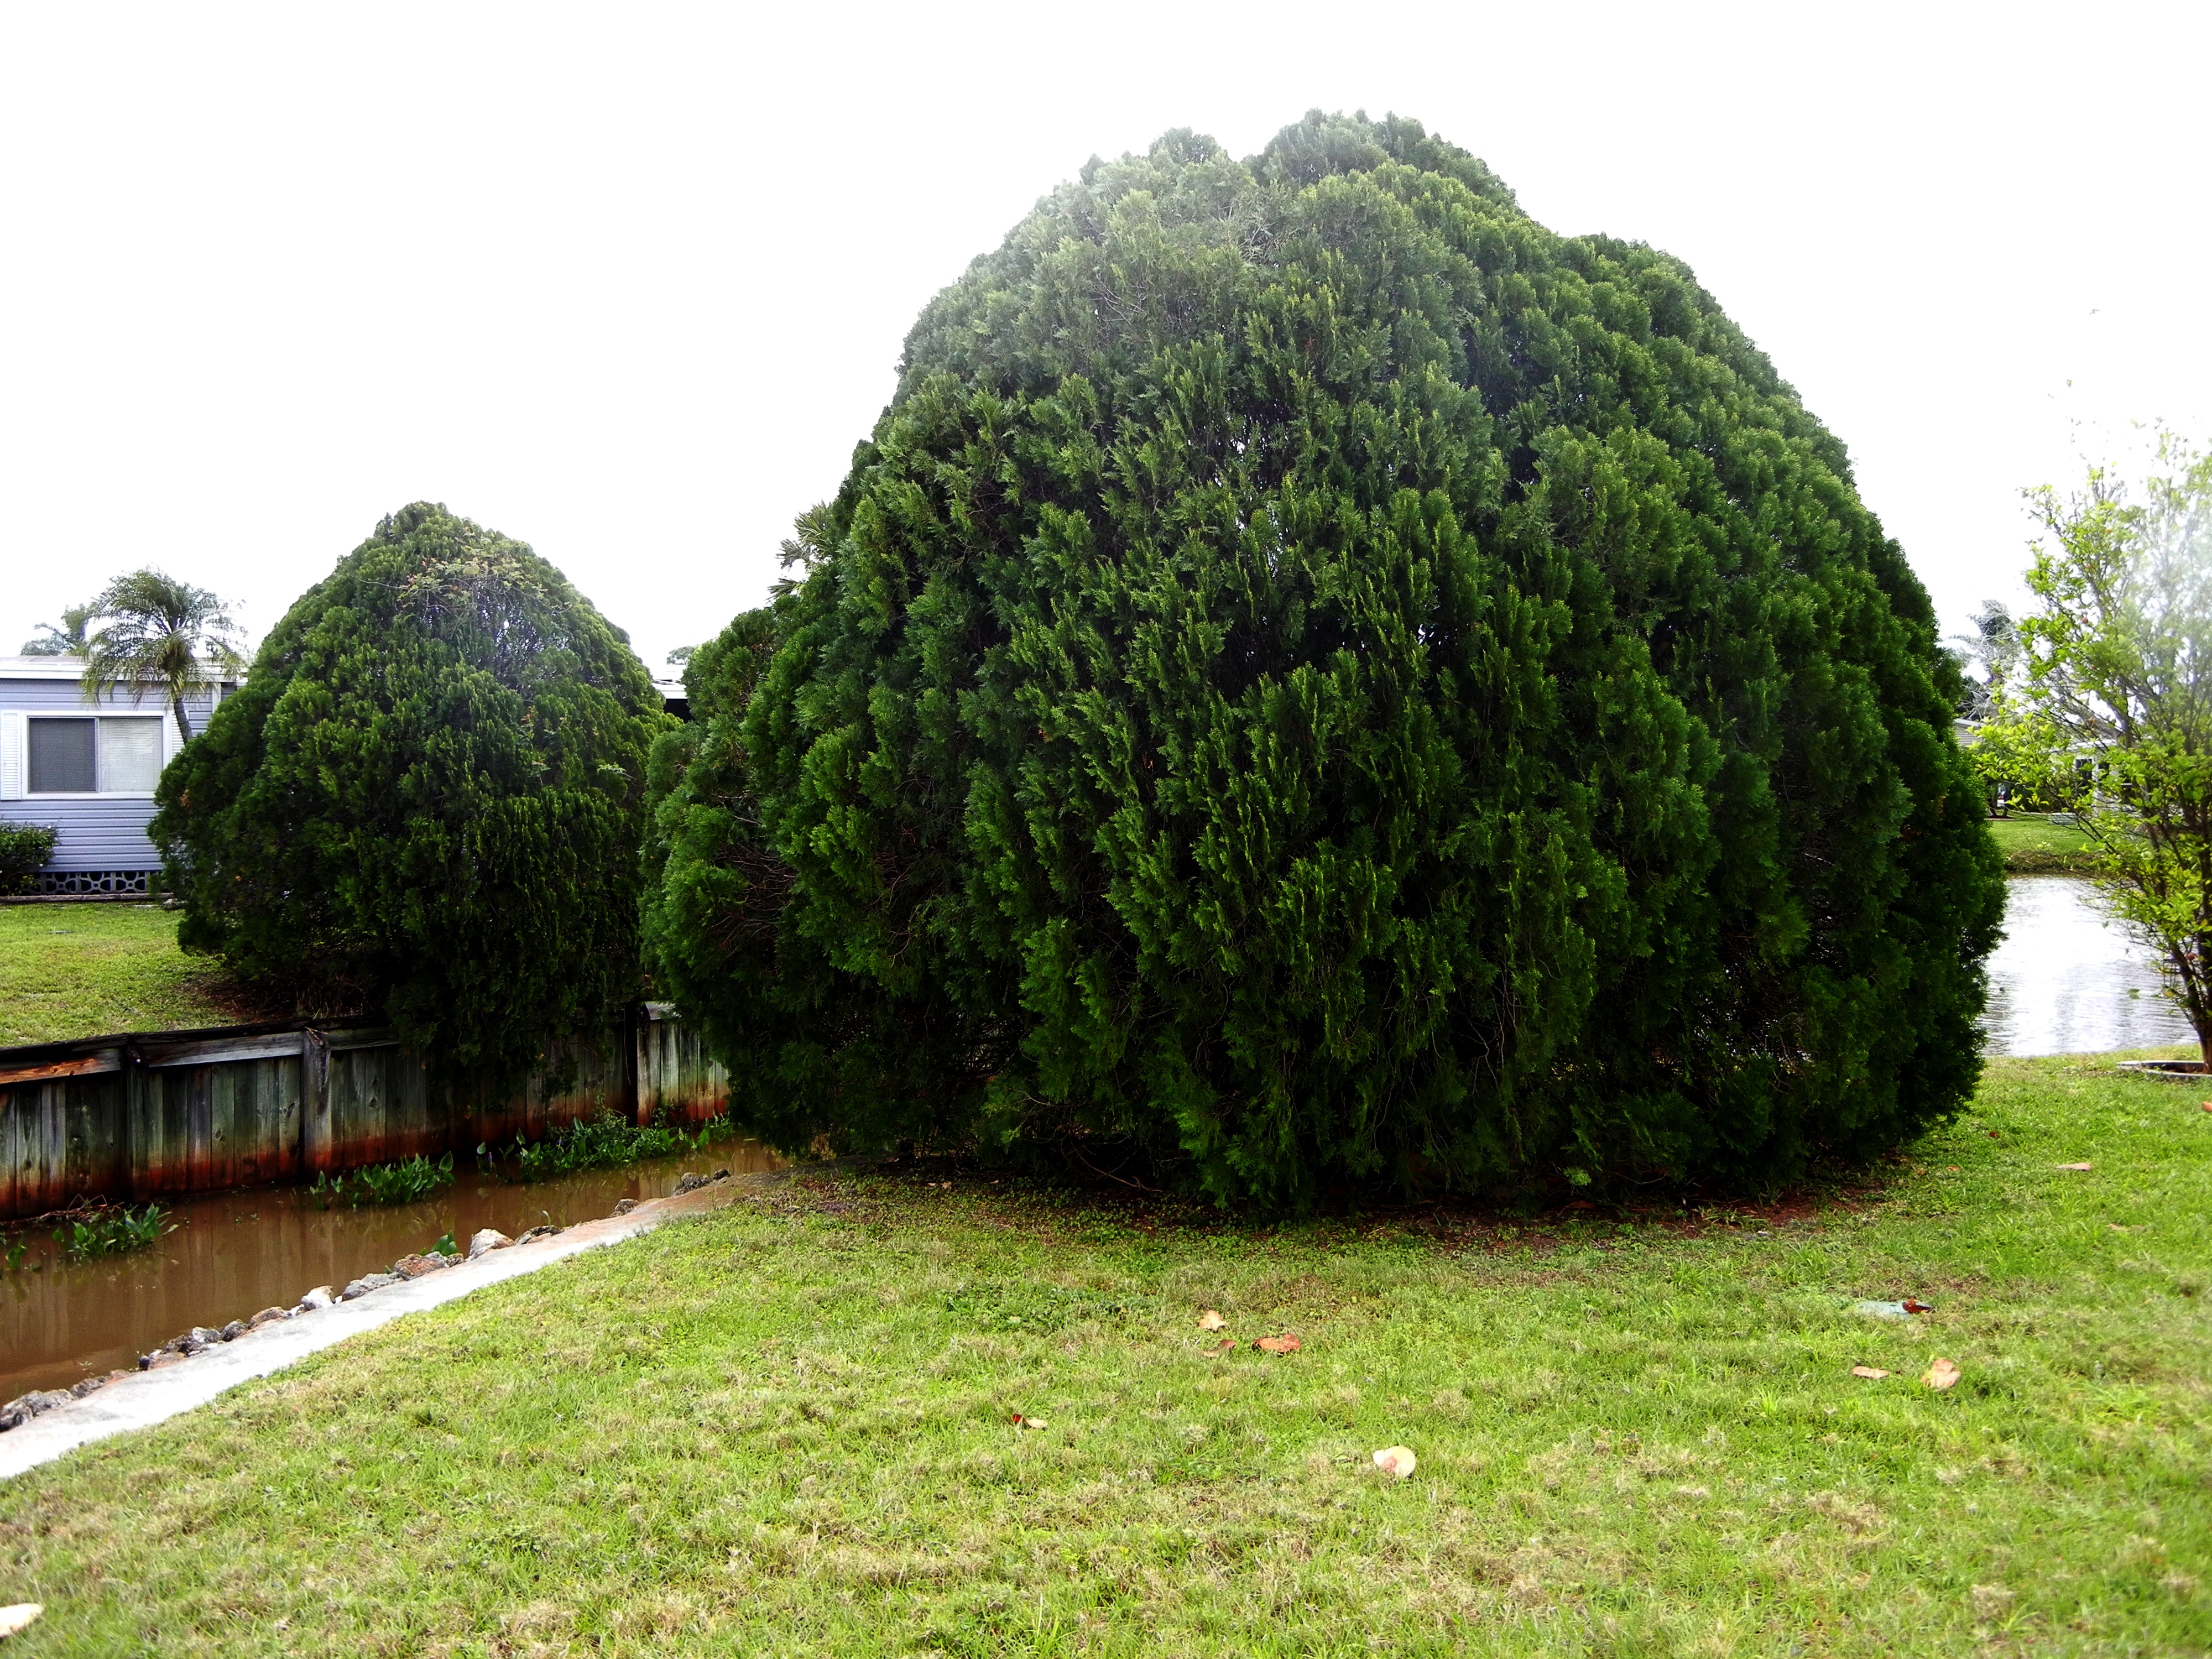 Oriental Arborvitae